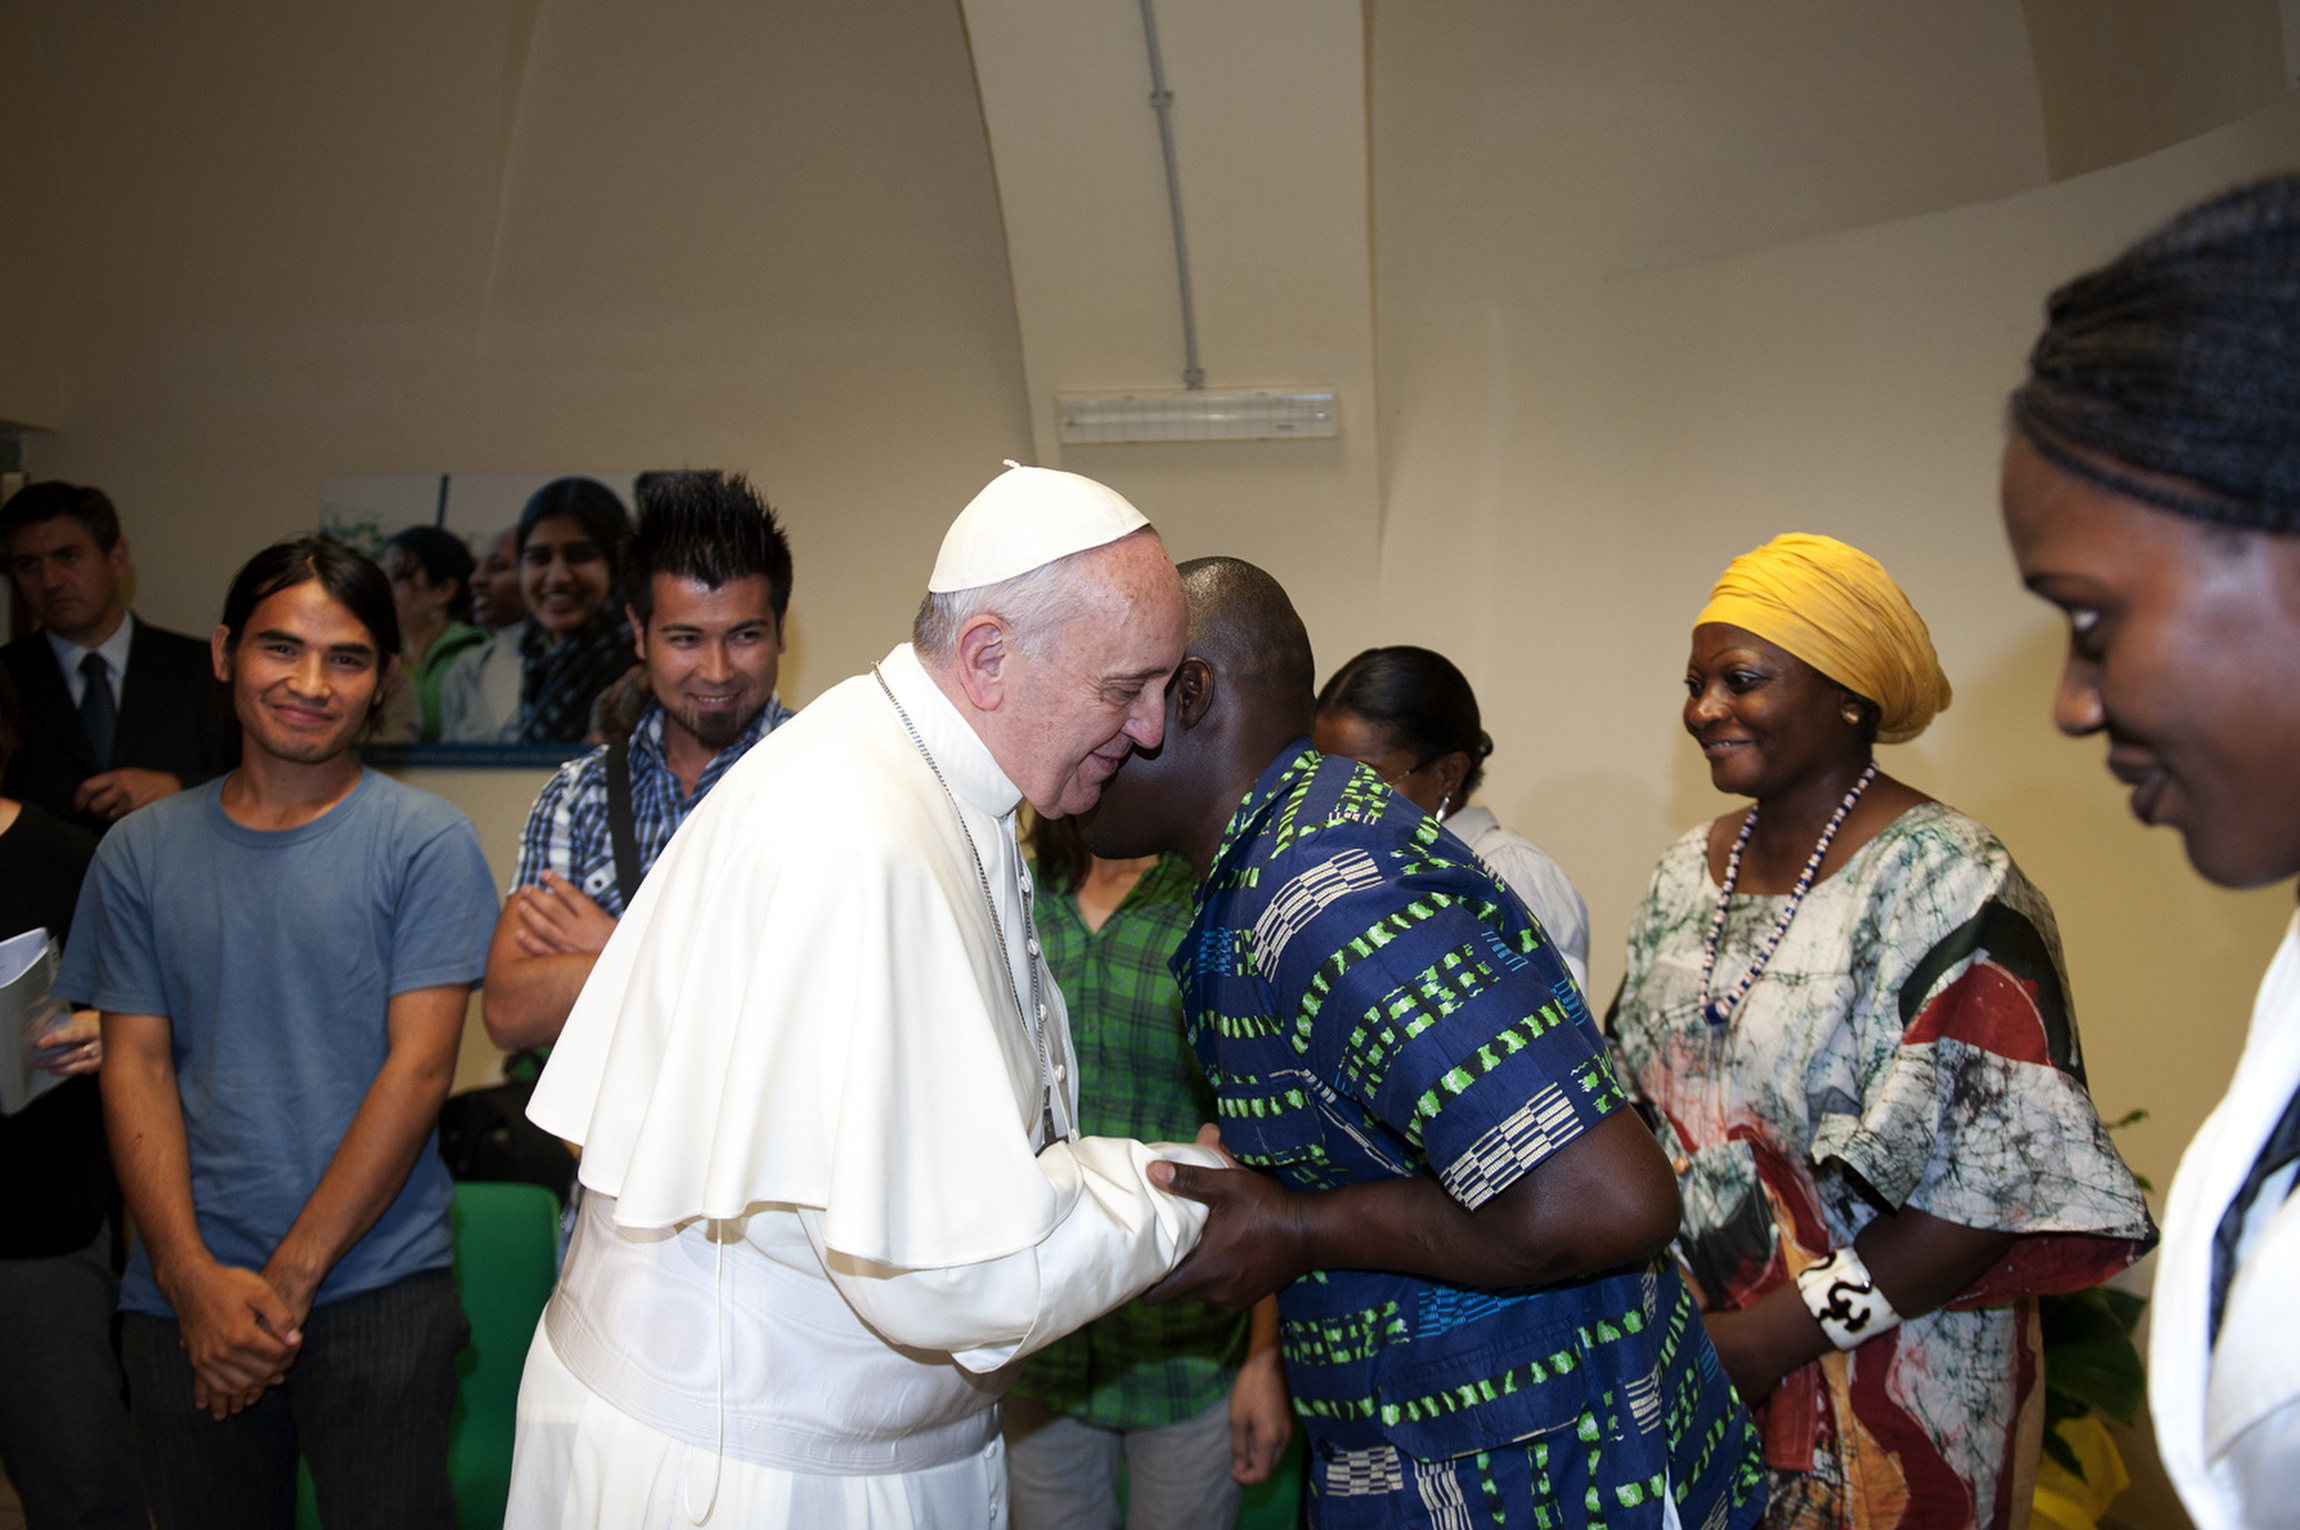 Αποτέλεσμα εικόνας για the pope and refugees